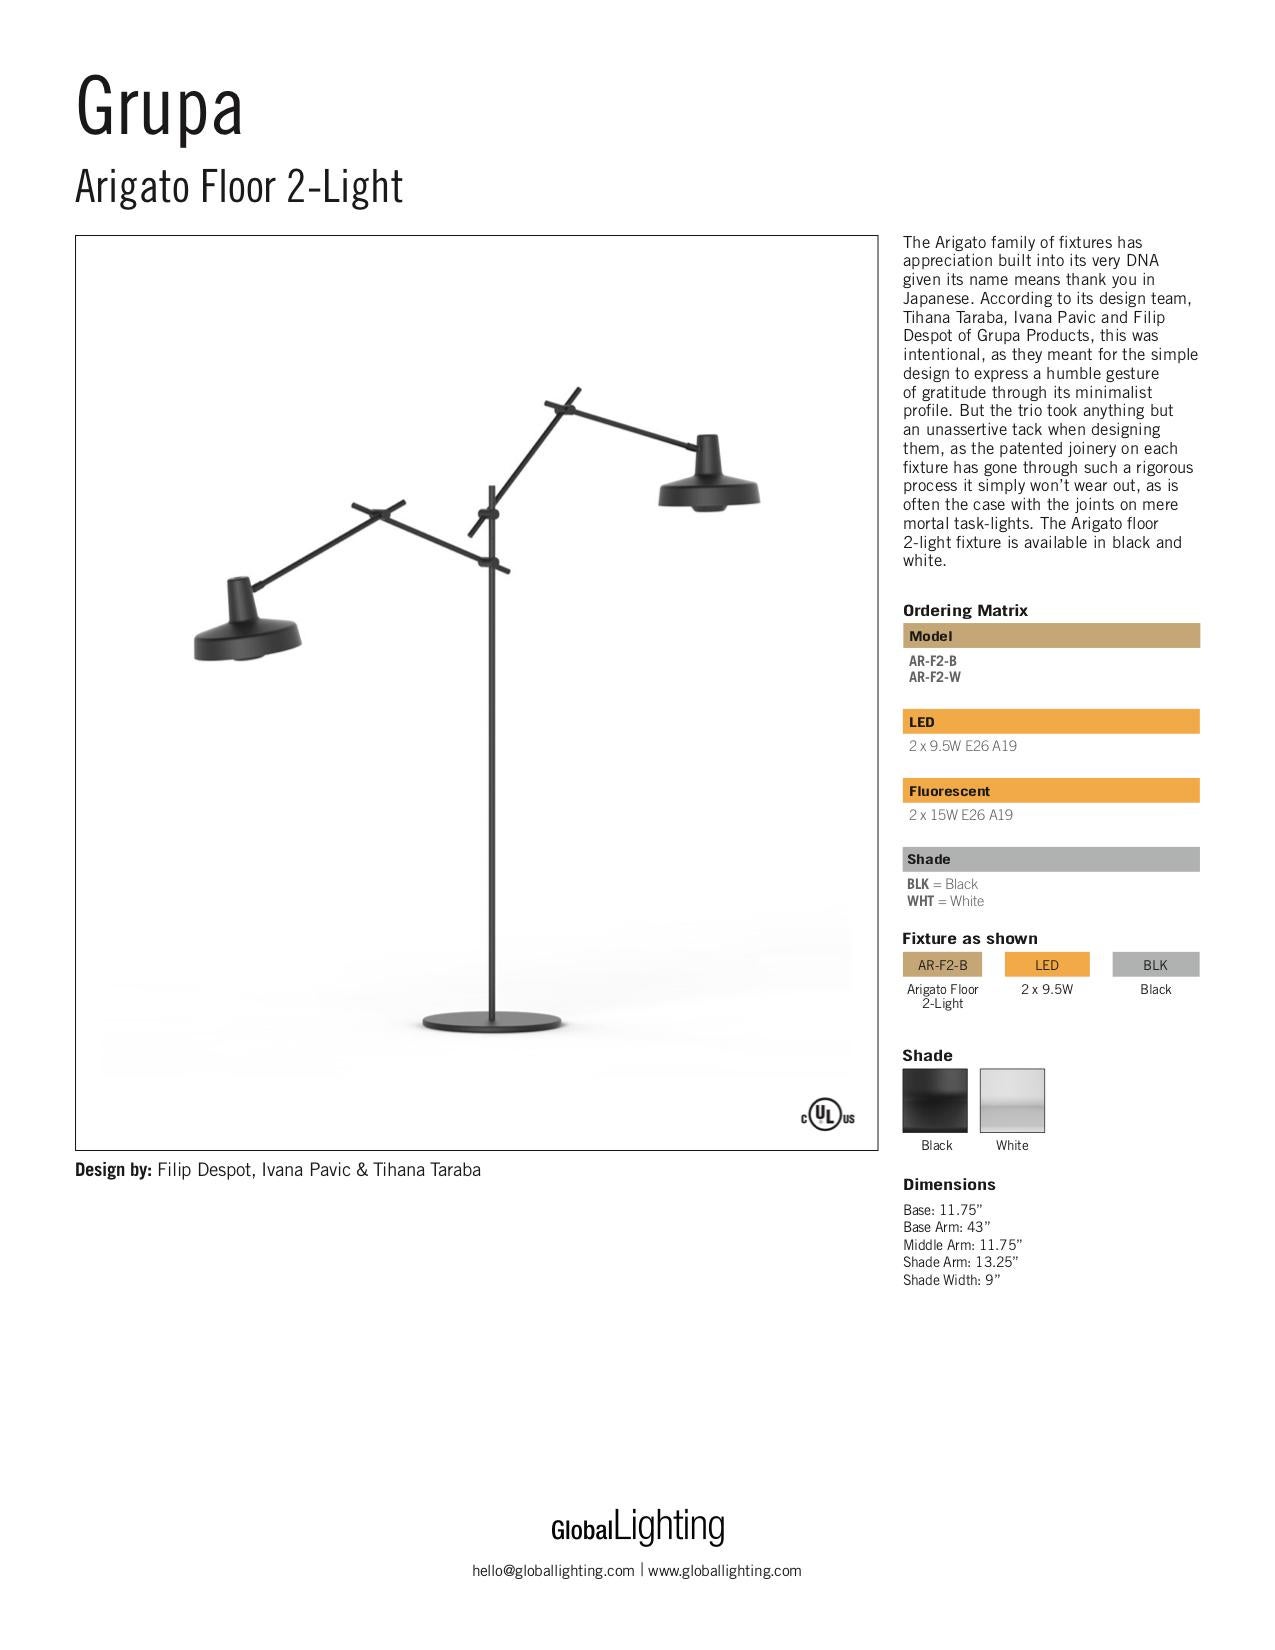 Grupa Arigato Double White Floor Lamp, 1stdibs New York For Sale 1